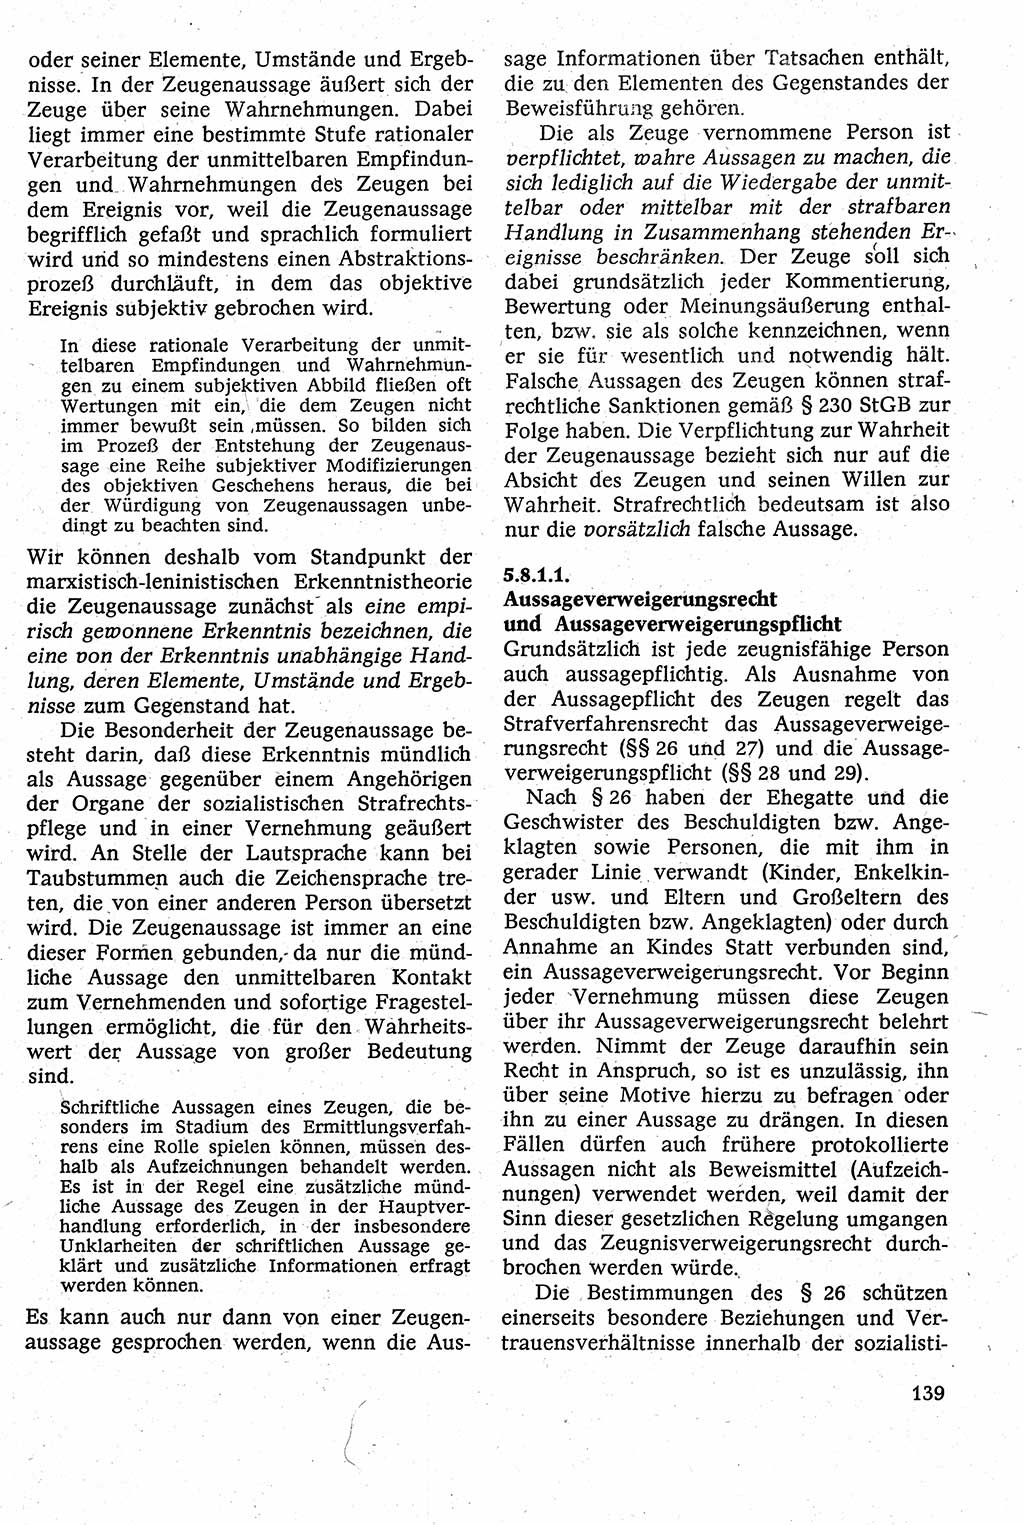 Strafverfahrensrecht [Deutsche Demokratische Republik (DDR)], Lehrbuch 1982, Seite 139 (Strafverf.-R. DDR Lb. 1982, S. 139)